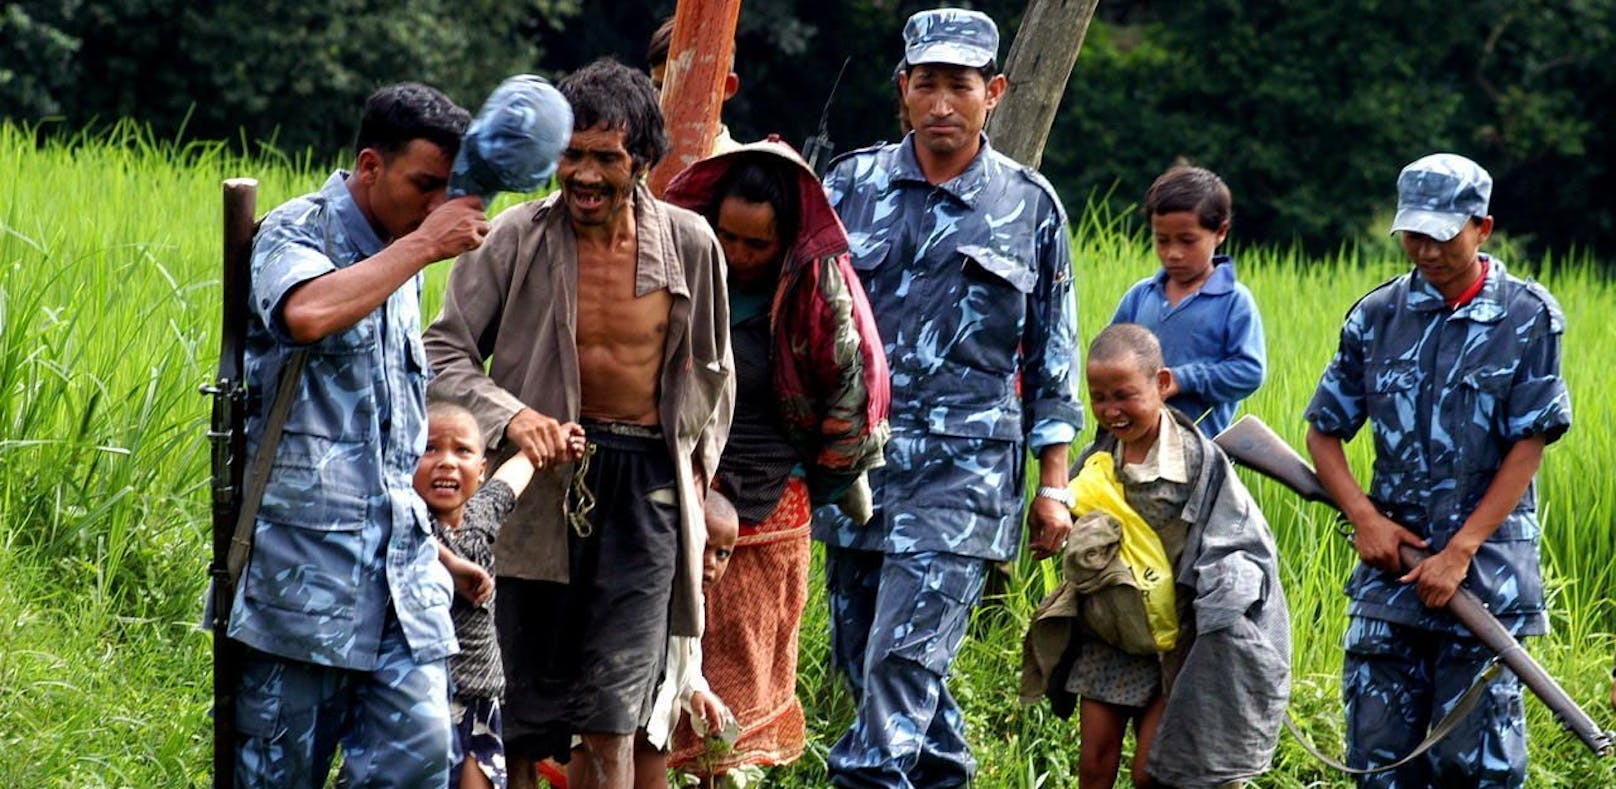 (Symbolbild) 2005: In Nepal wird eine Frau verhaftet, die ihre drei Kinder zwischen vier und zehn Jahren ein Jahr lang angekettet und sexuell missbraucht haben soll.